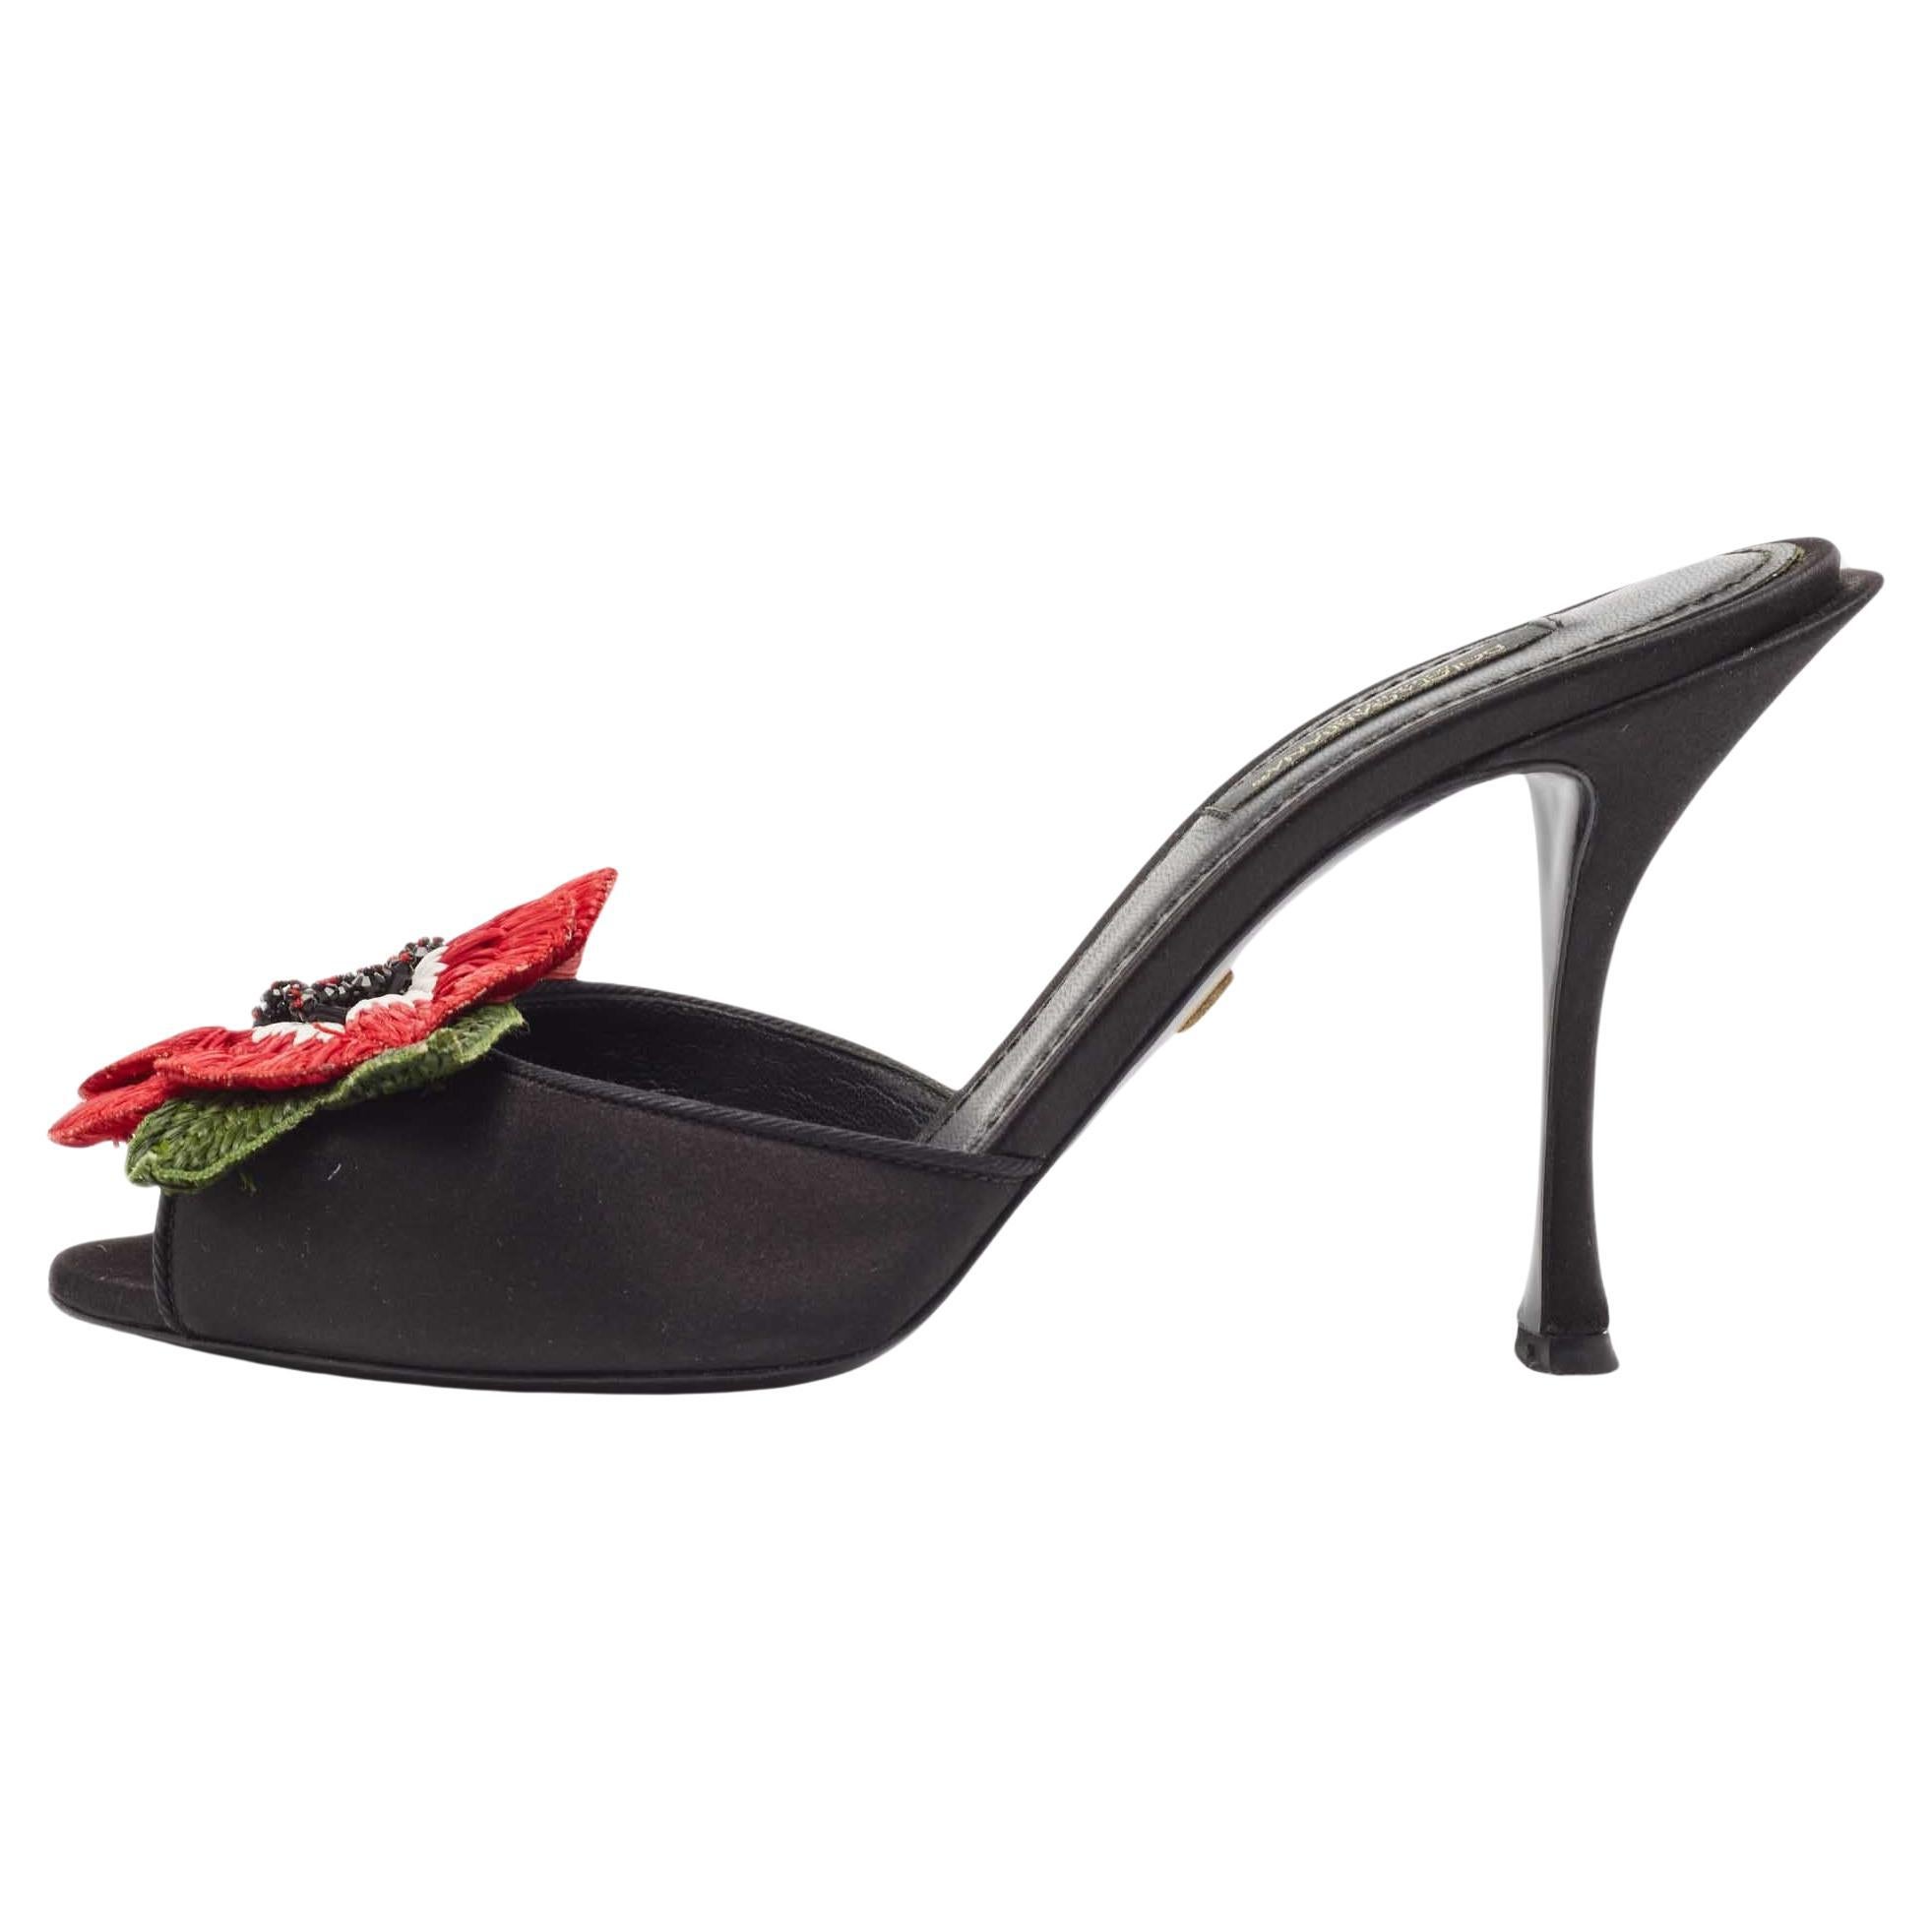 Dolce & Gabbana Black Satin Floral Applique Slide Sandals Size 37.5